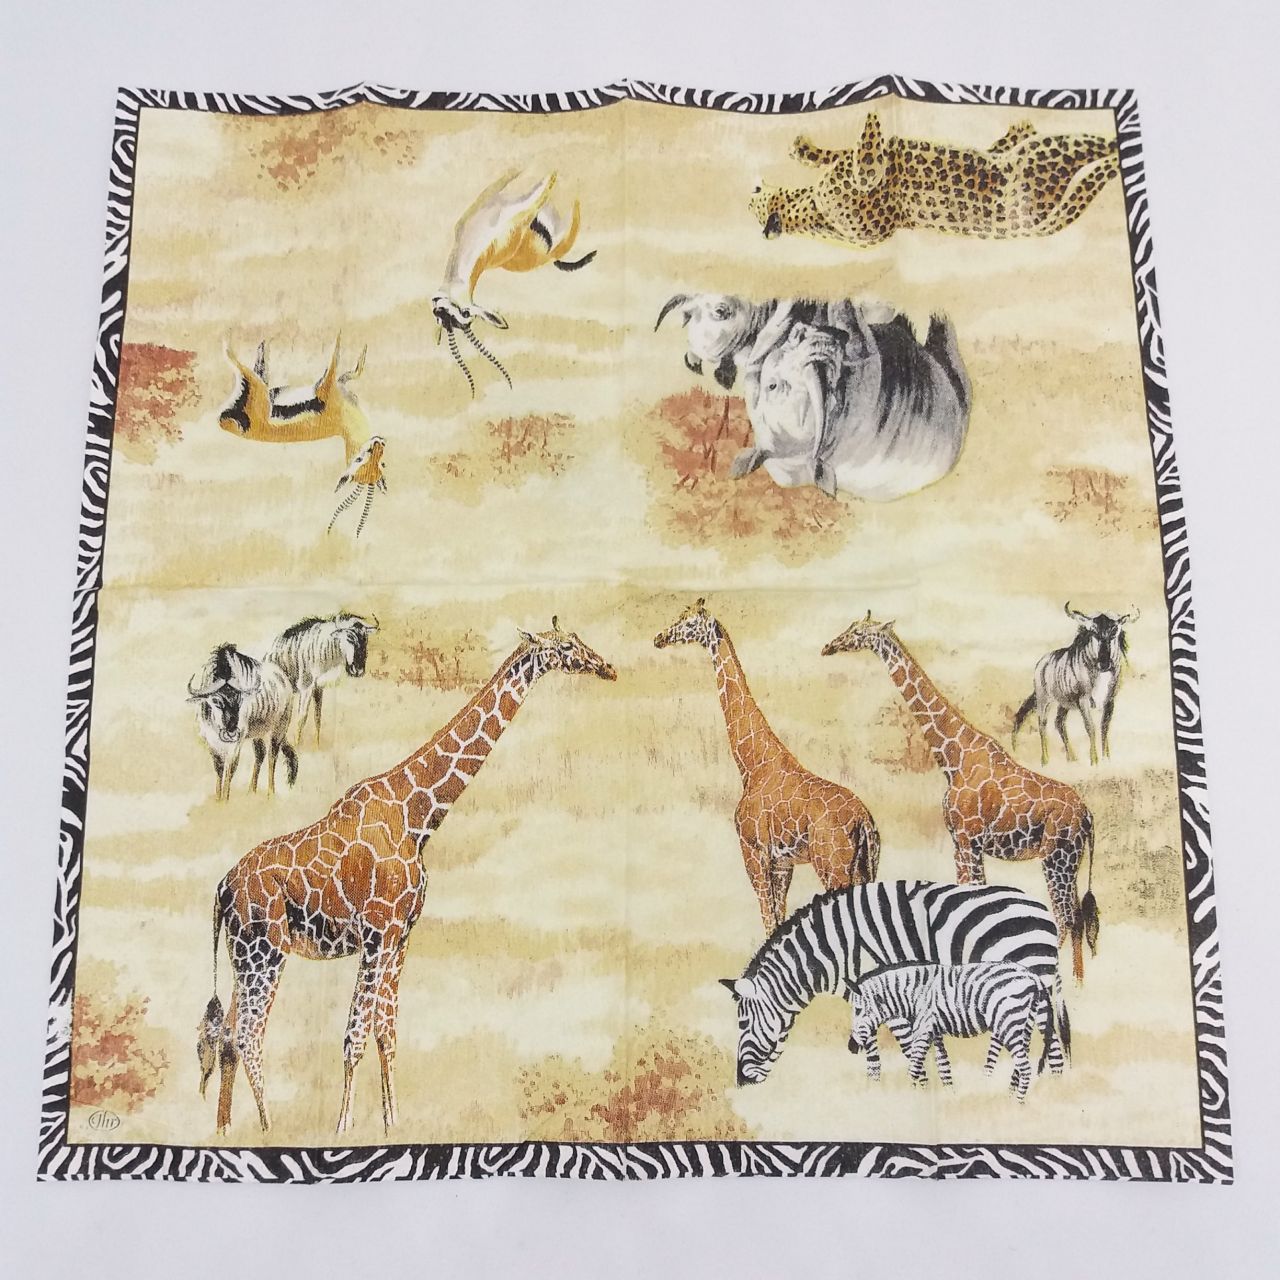 Papírzsebkendő - Afrikai állatok